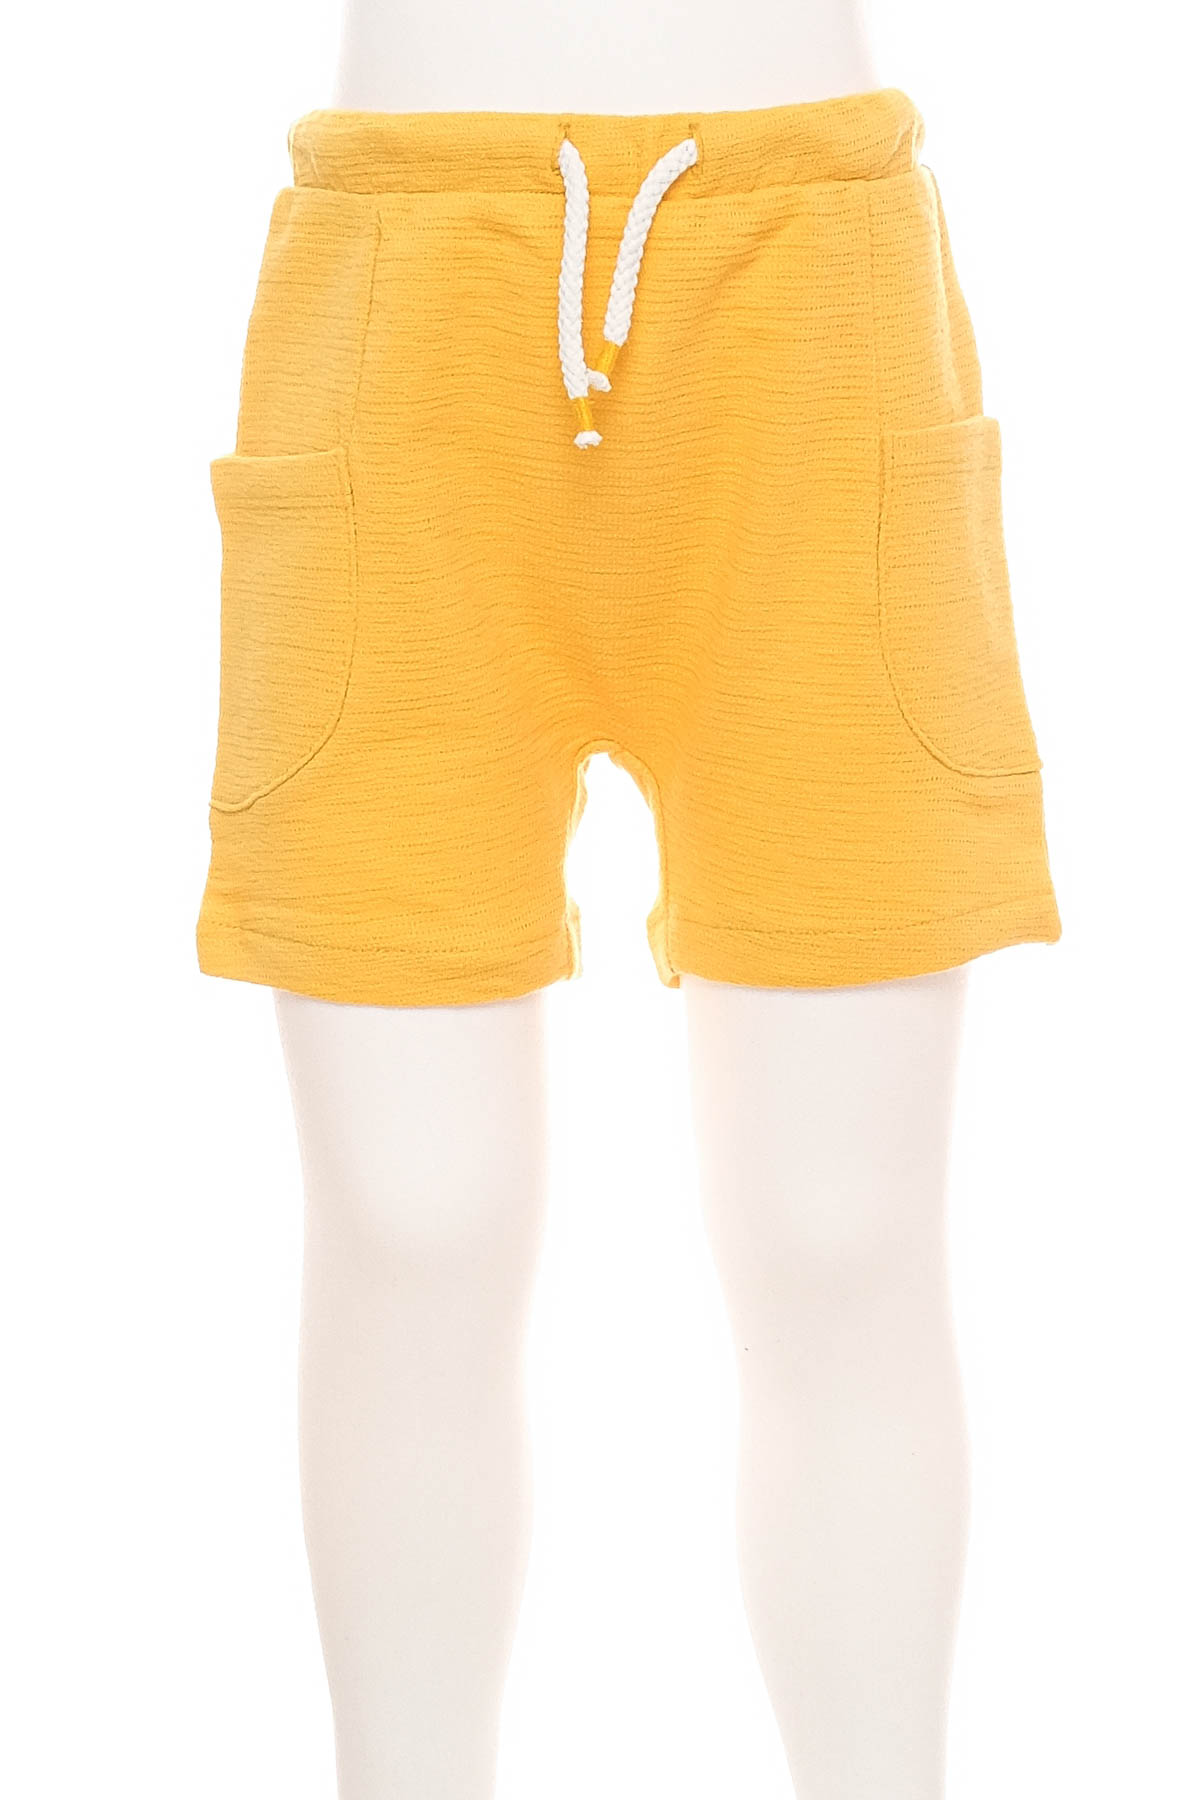 Бебешки панталони за момче - Fagottino by OVS - 0